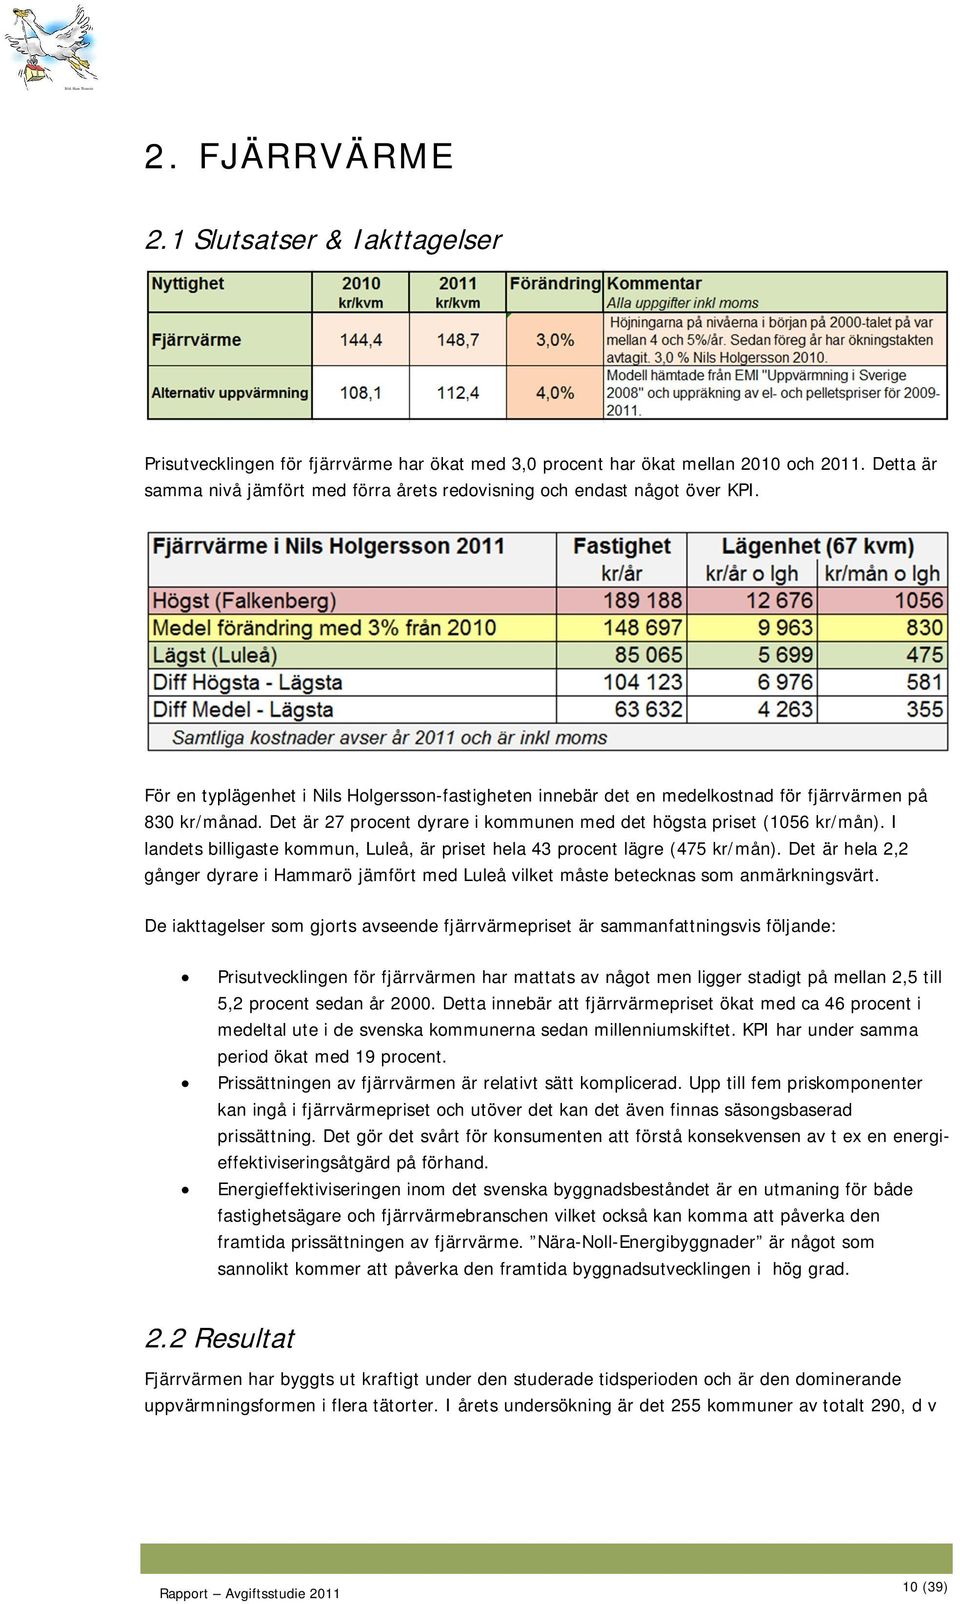 Det är 27 procent dyrare i kommunen med det högsta priset (1056 kr/mån). I landets billigaste kommun, Luleå, är priset hela 43 procent lägre (475 kr/mån).